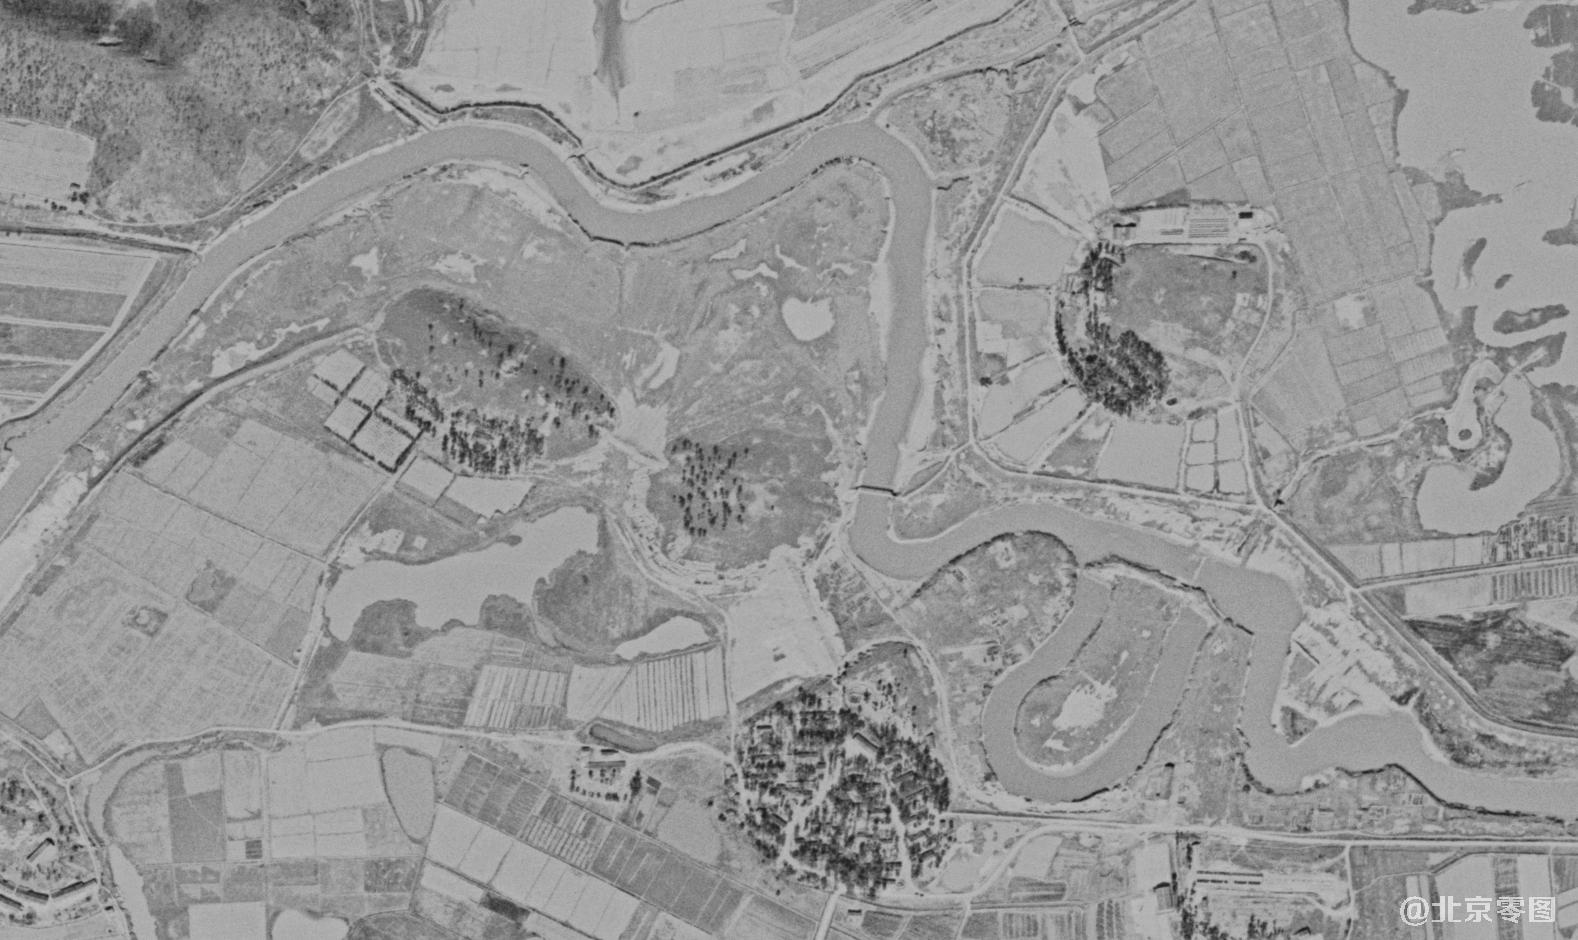 锁眼卫星拍摄的城市历史影像图